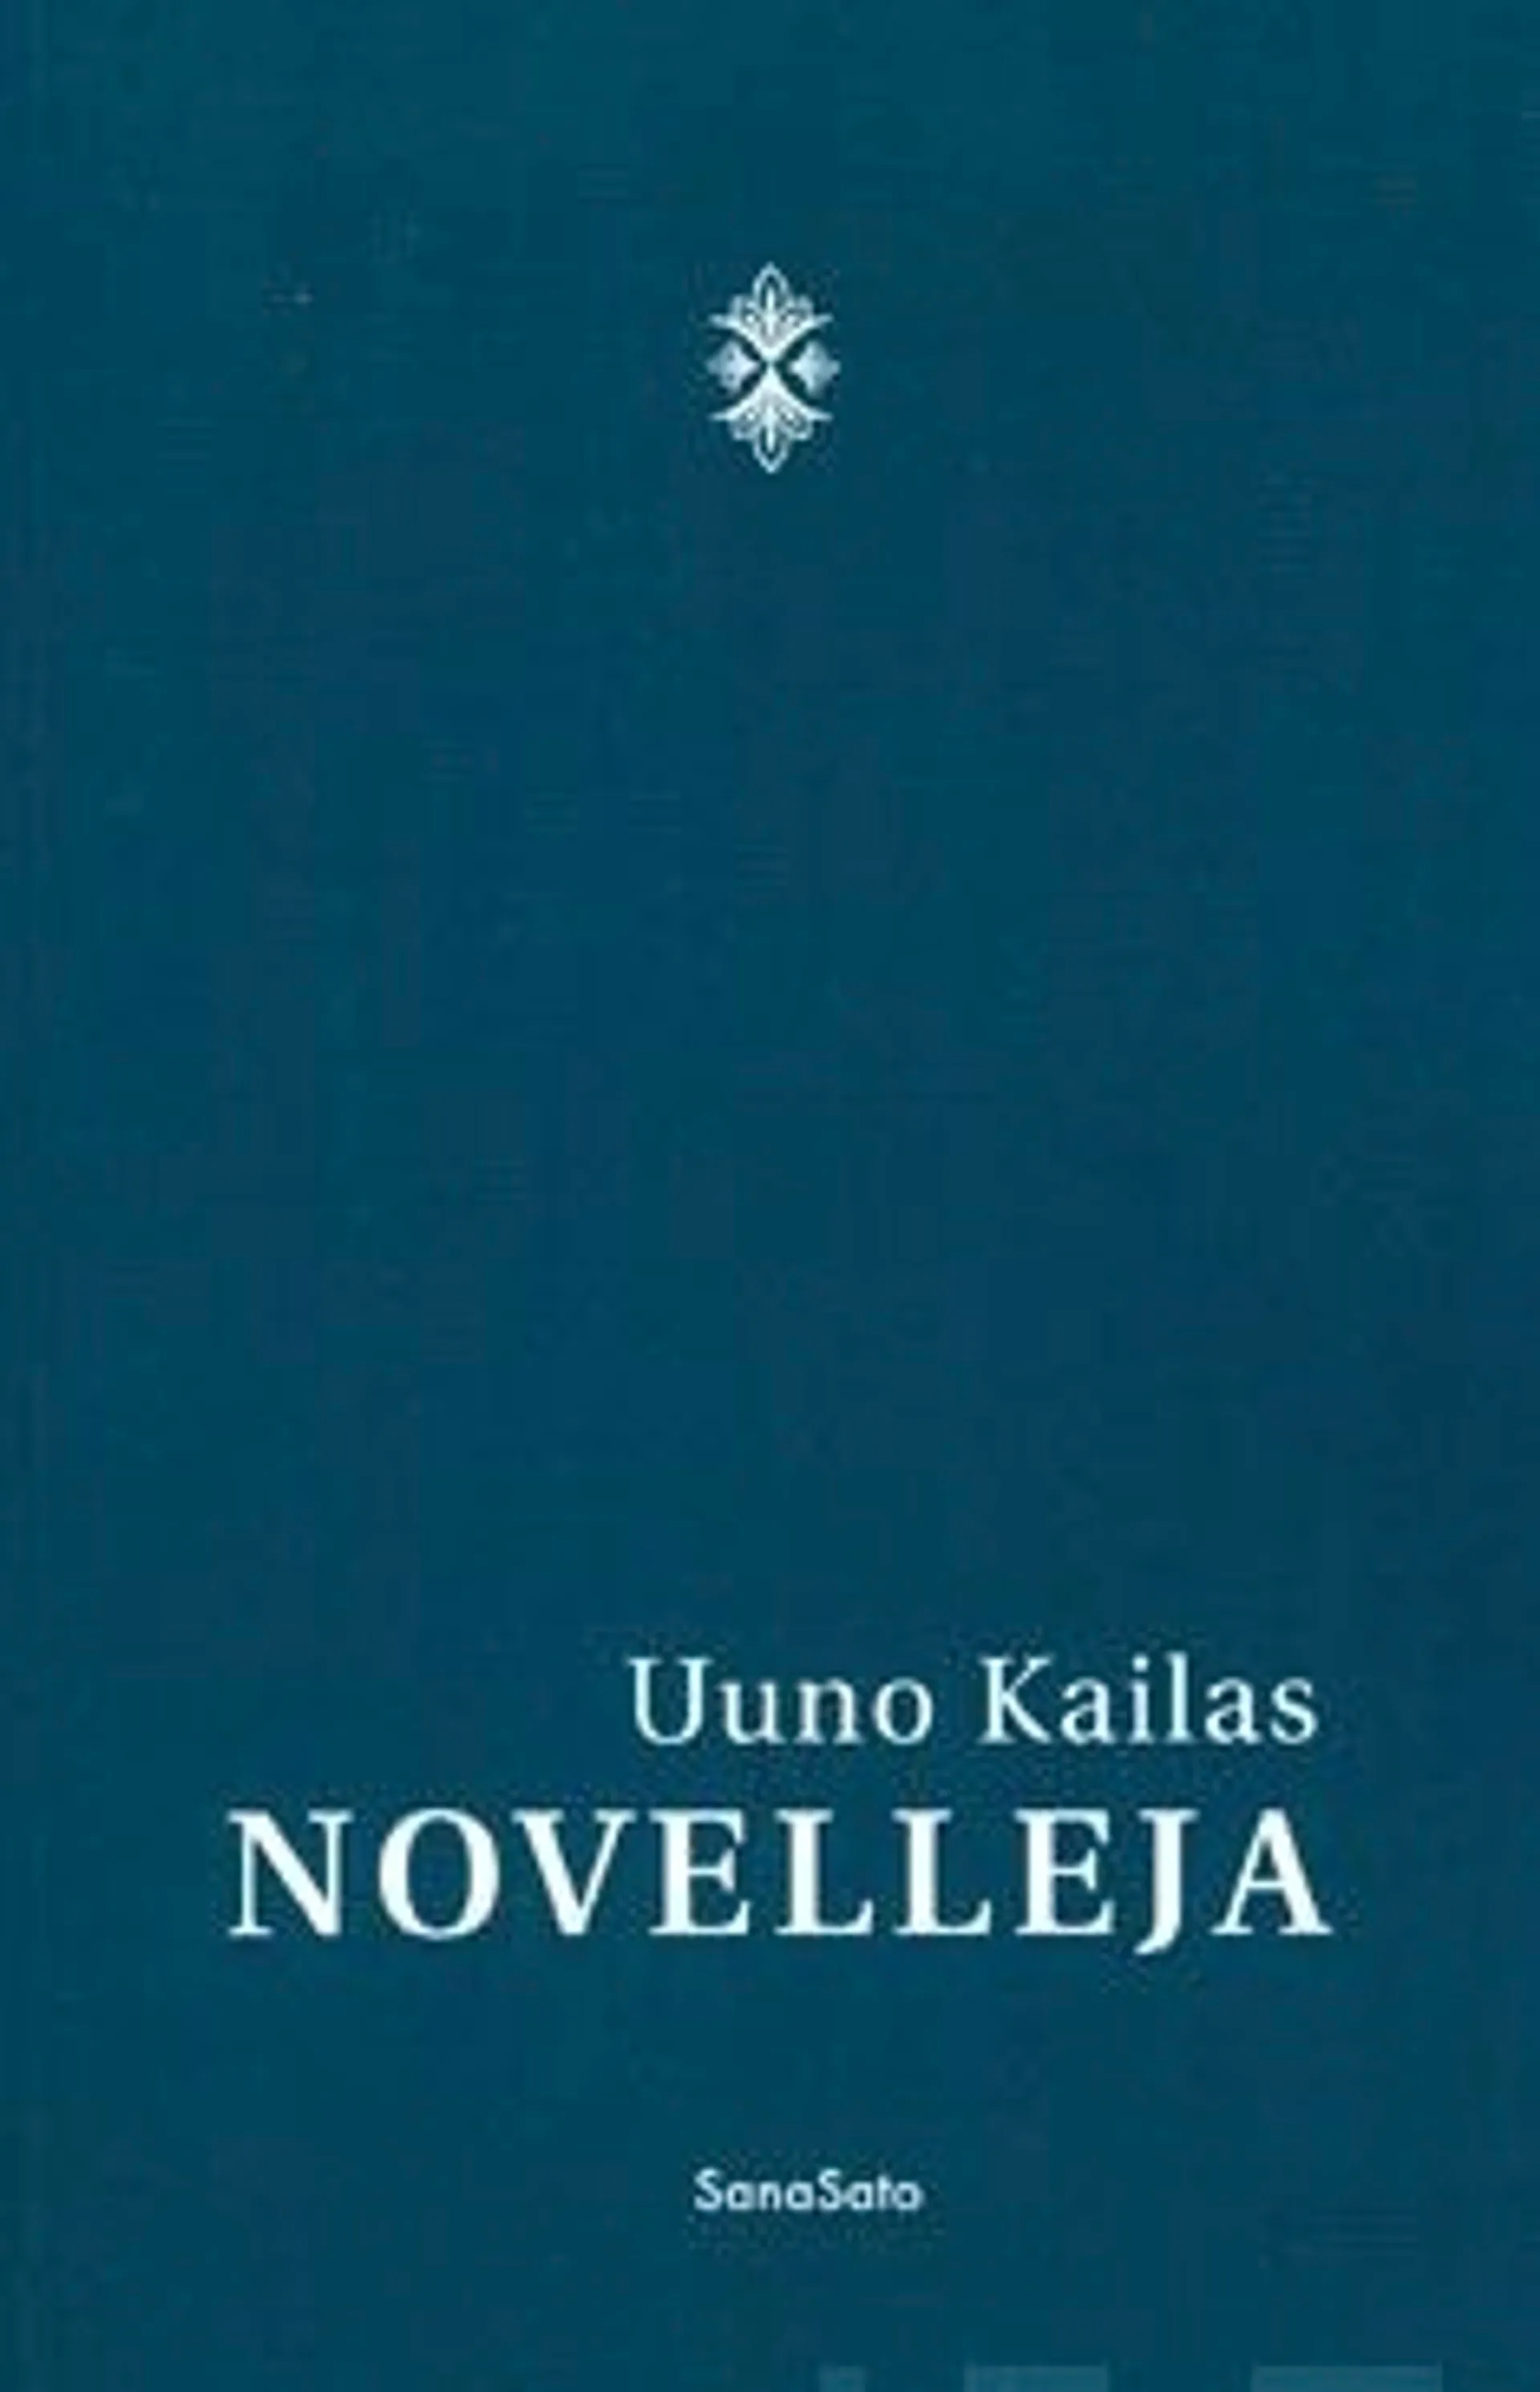 Kailas, Novelleja